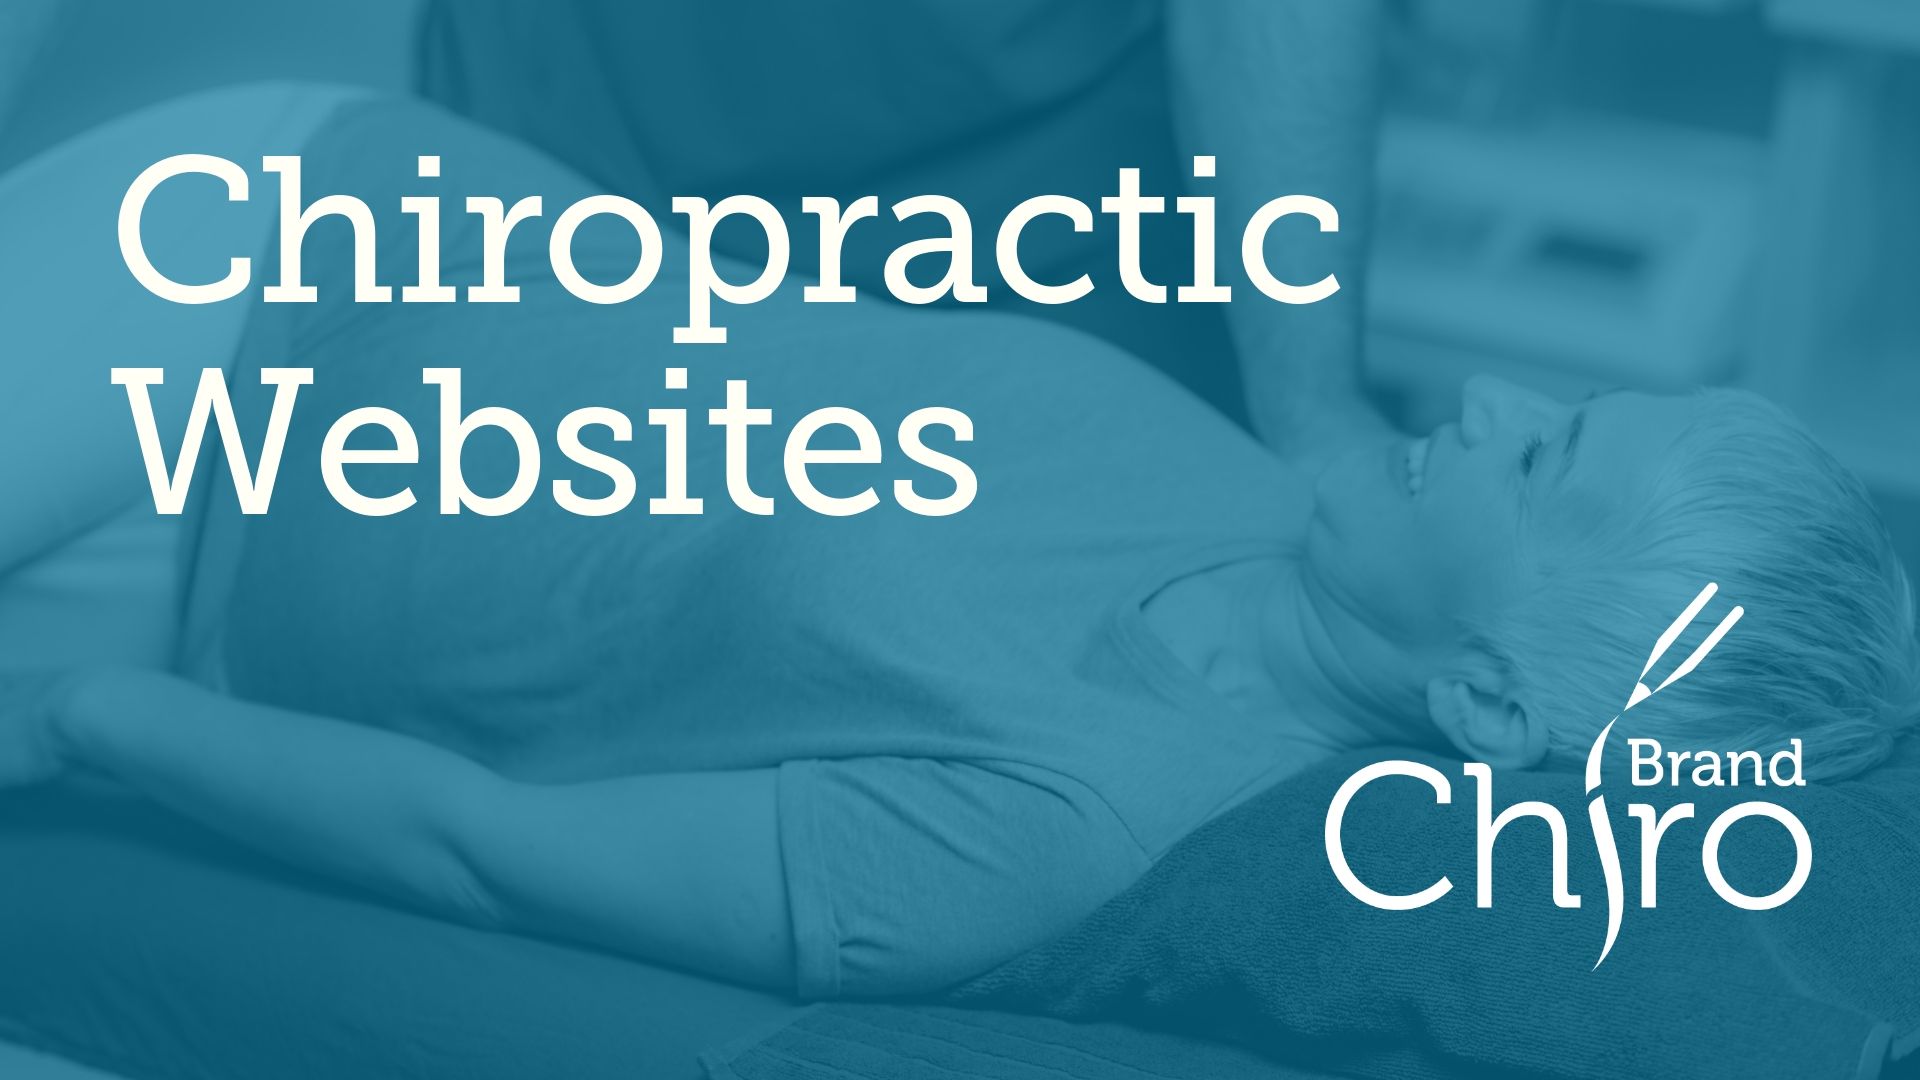 Custom Chiropractic Website Design Generate new patient leads today